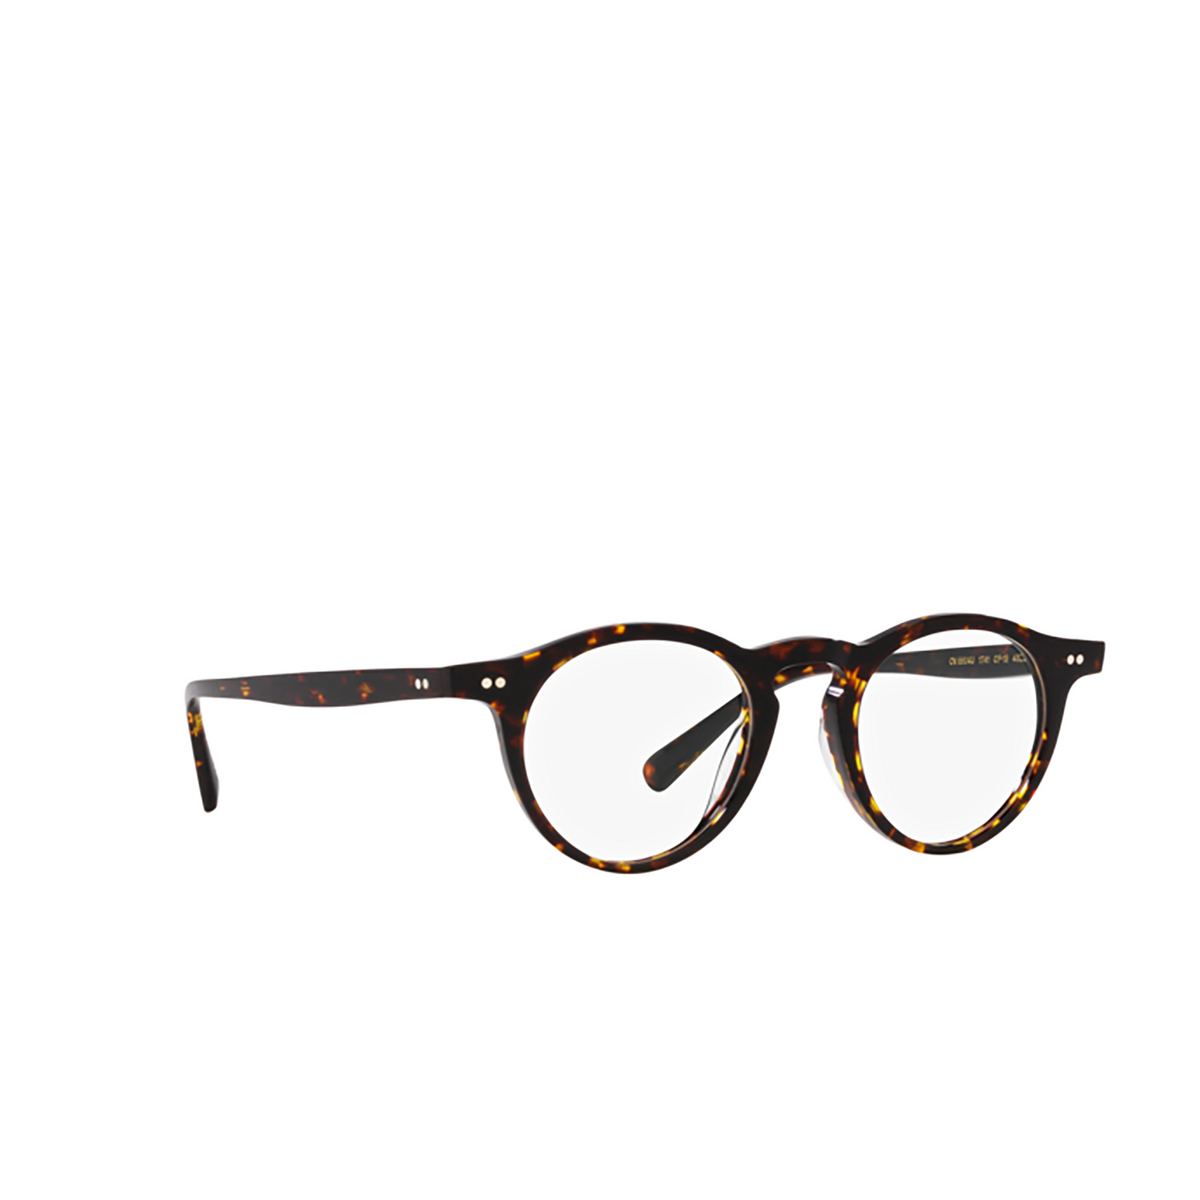 Oliver Peoples OP-13 Eyeglasses 1741 Atago Tortoise - 2/4